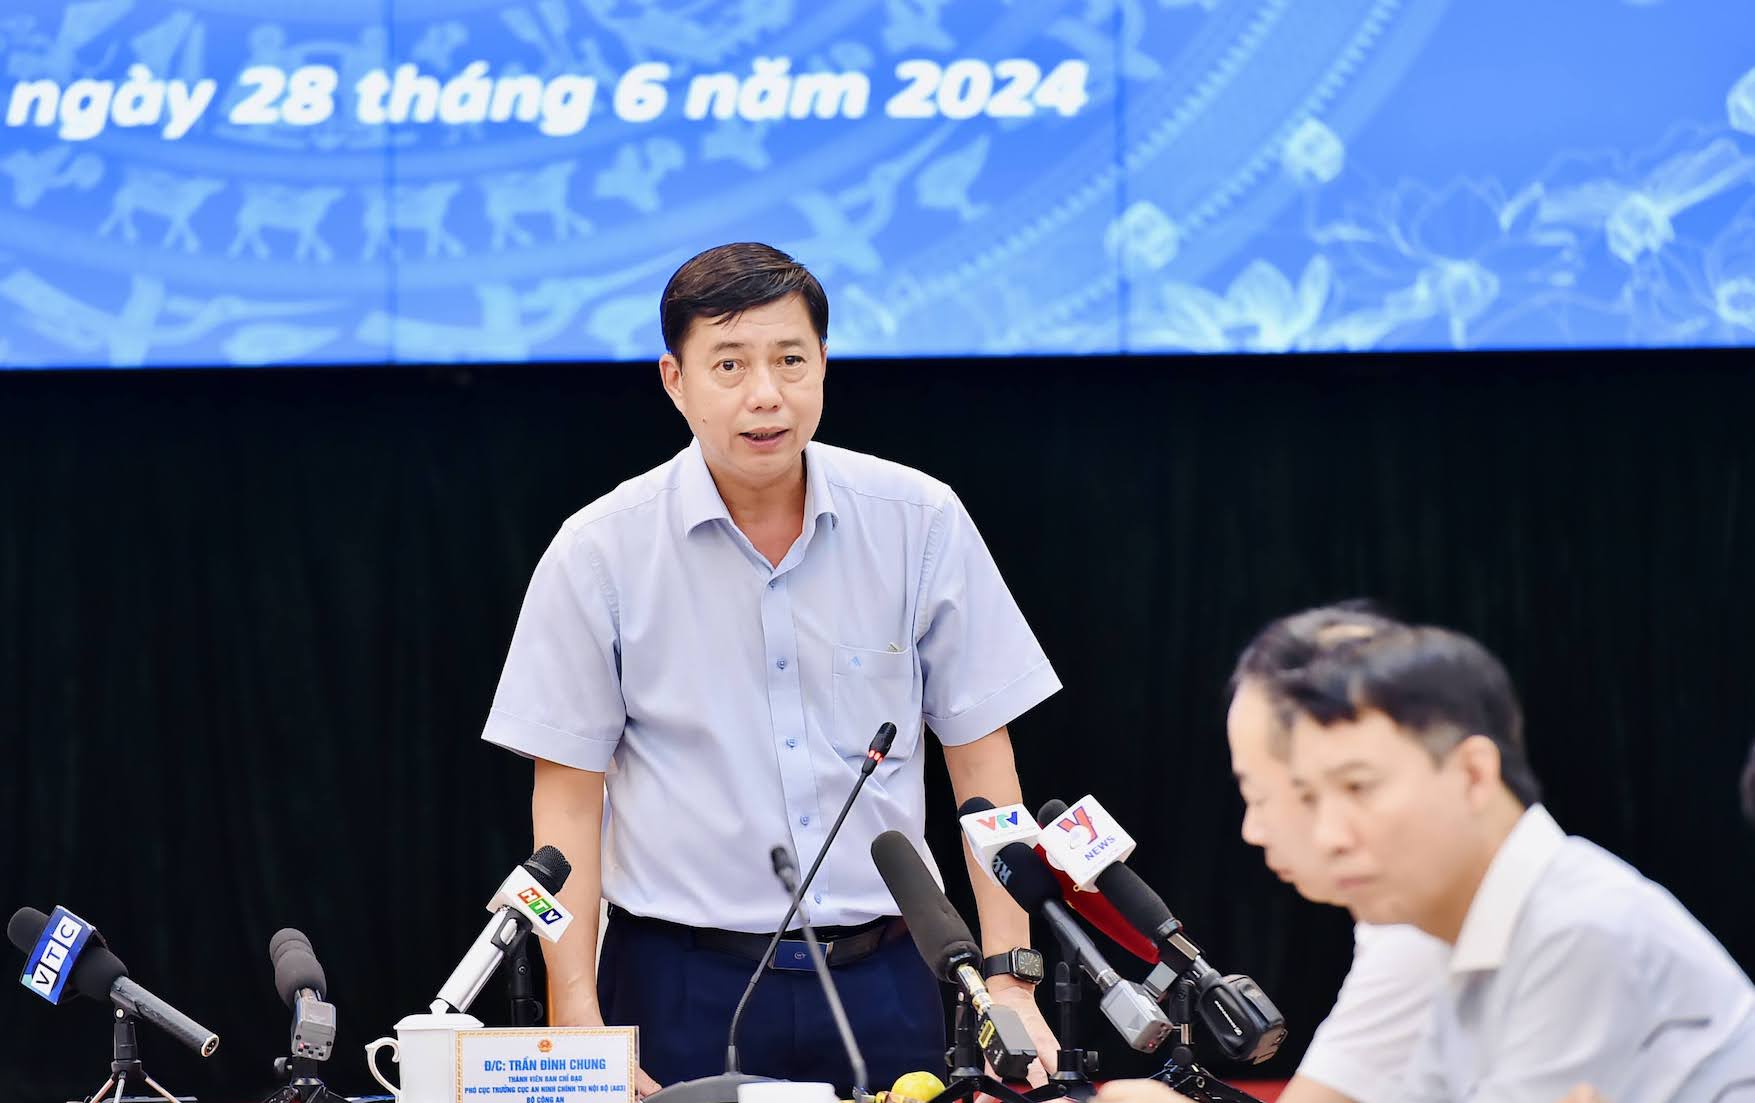 Thiếu tướng Trần Đình Chung, phó cục trưởng Cục An ninh chính trị nội bộ. Ảnh: Bộ GDĐT